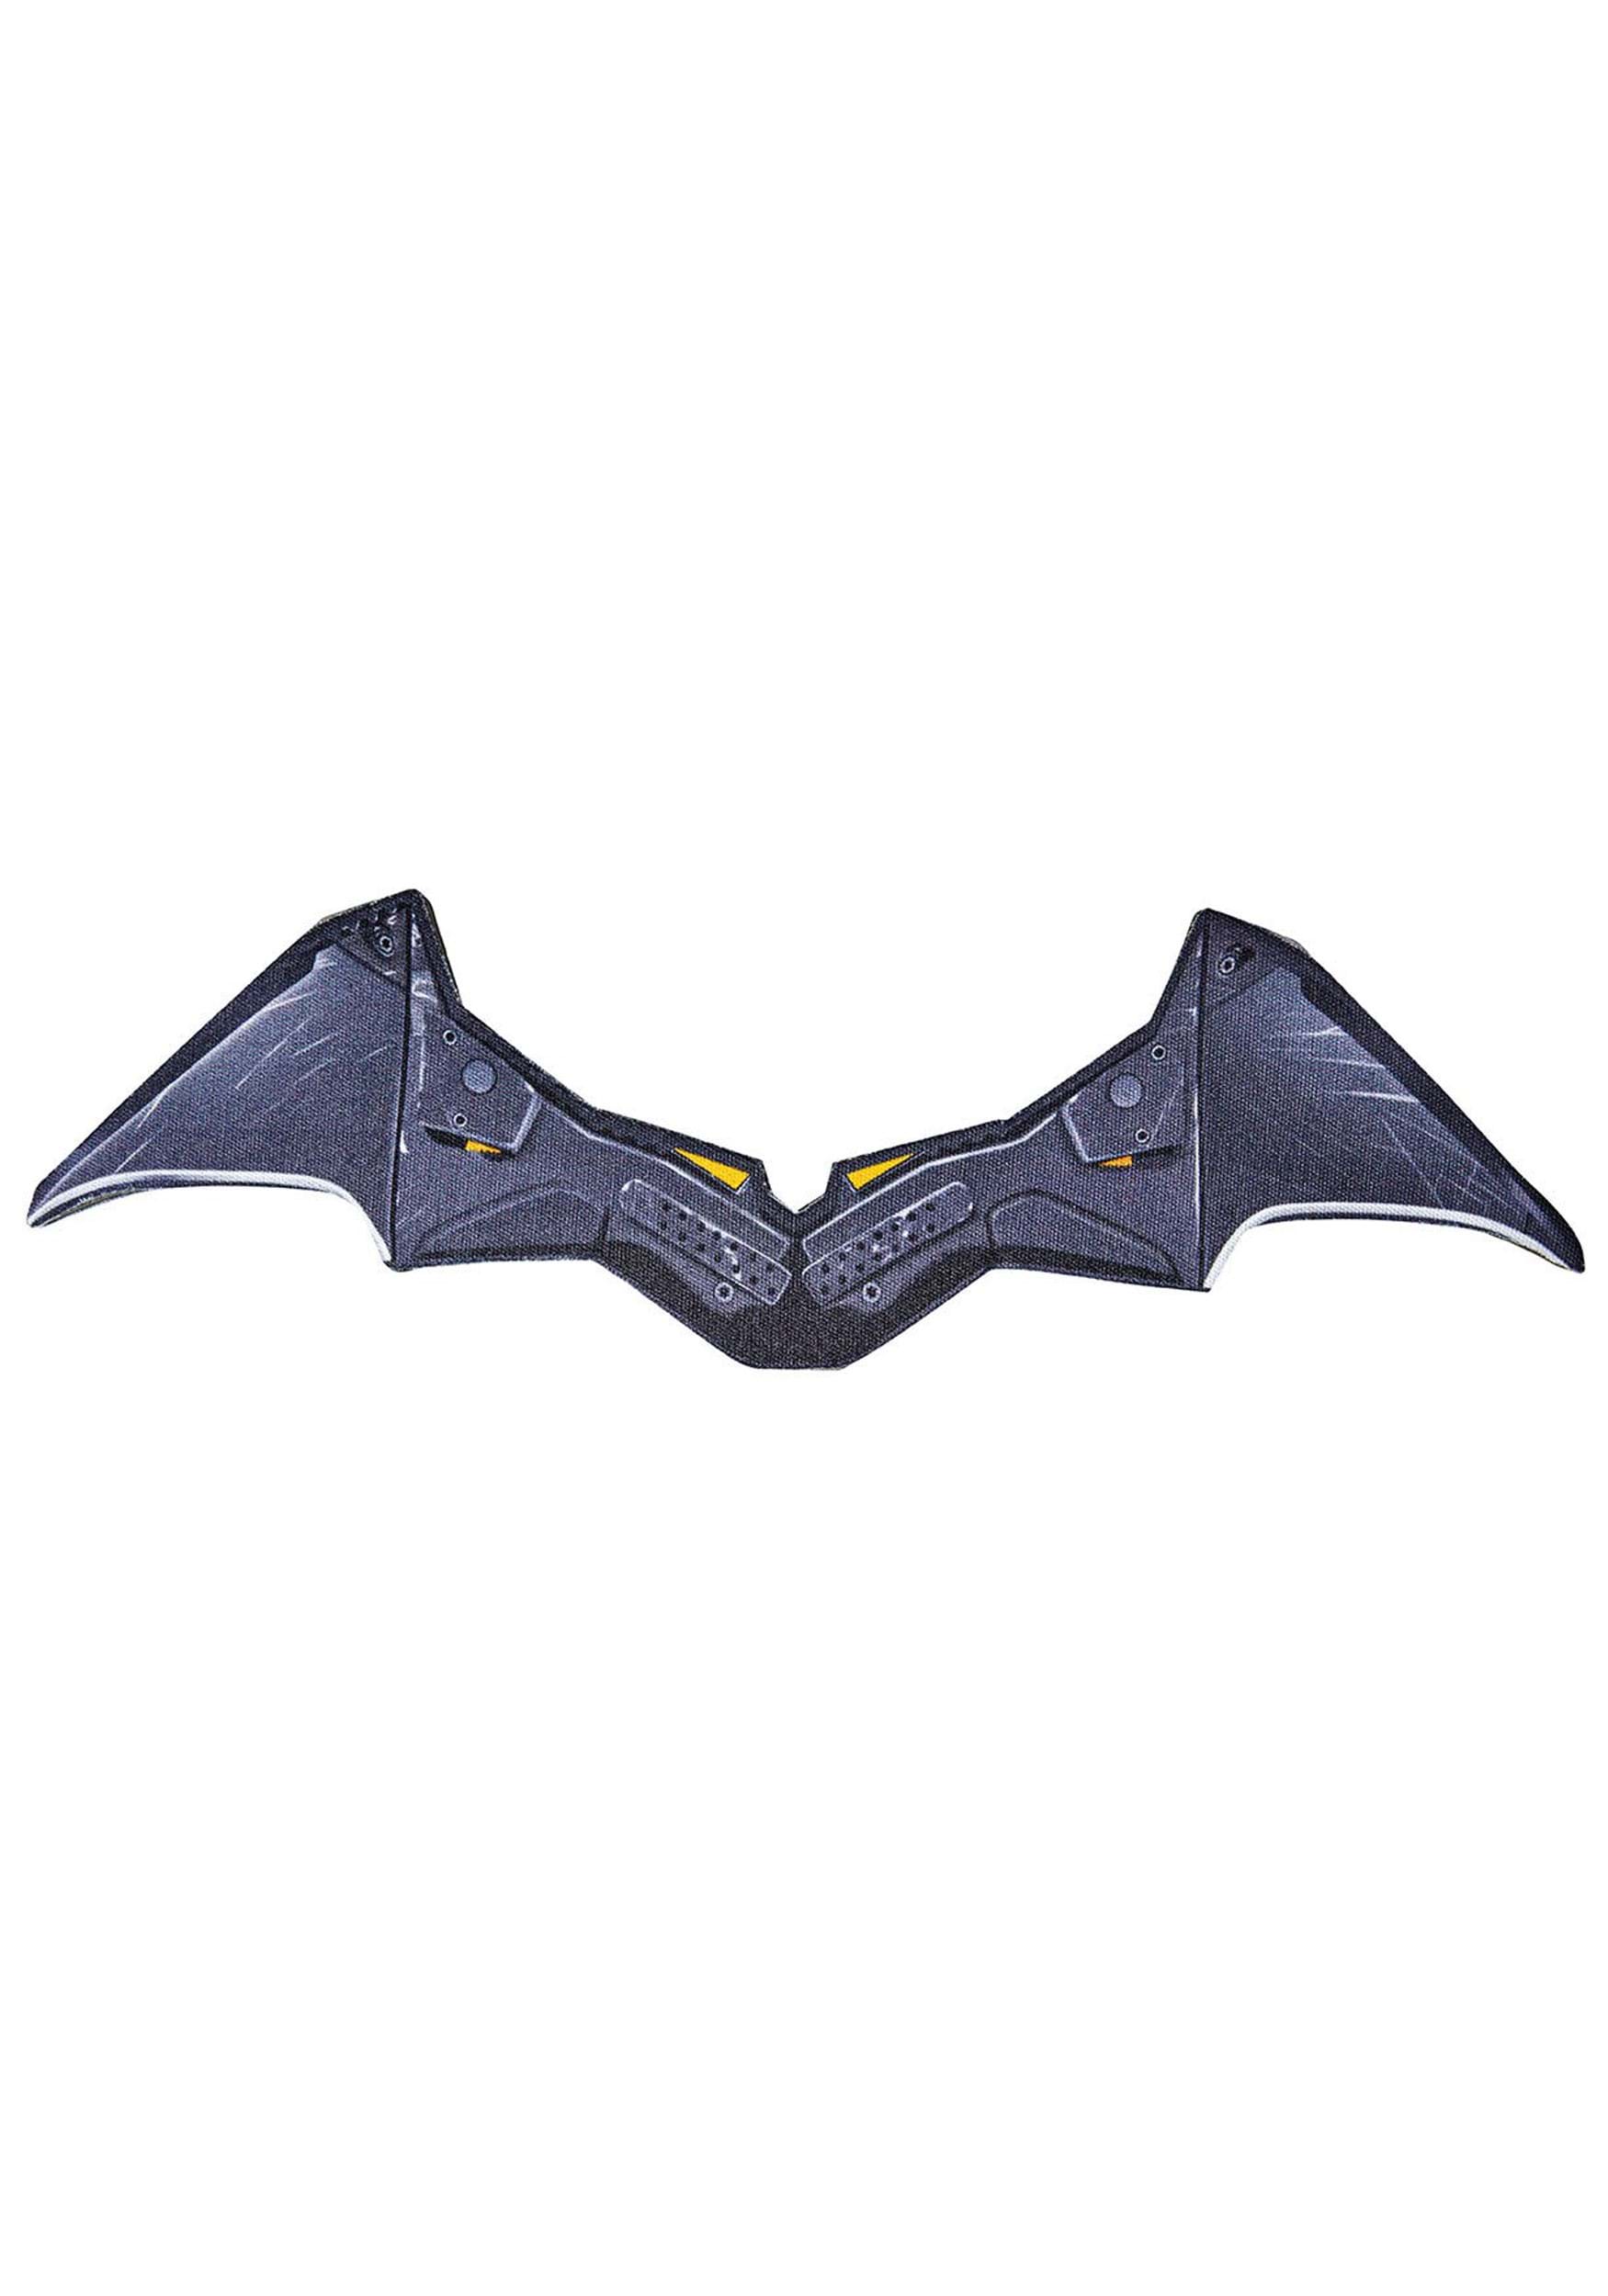 El Batman Batarang Multicolor